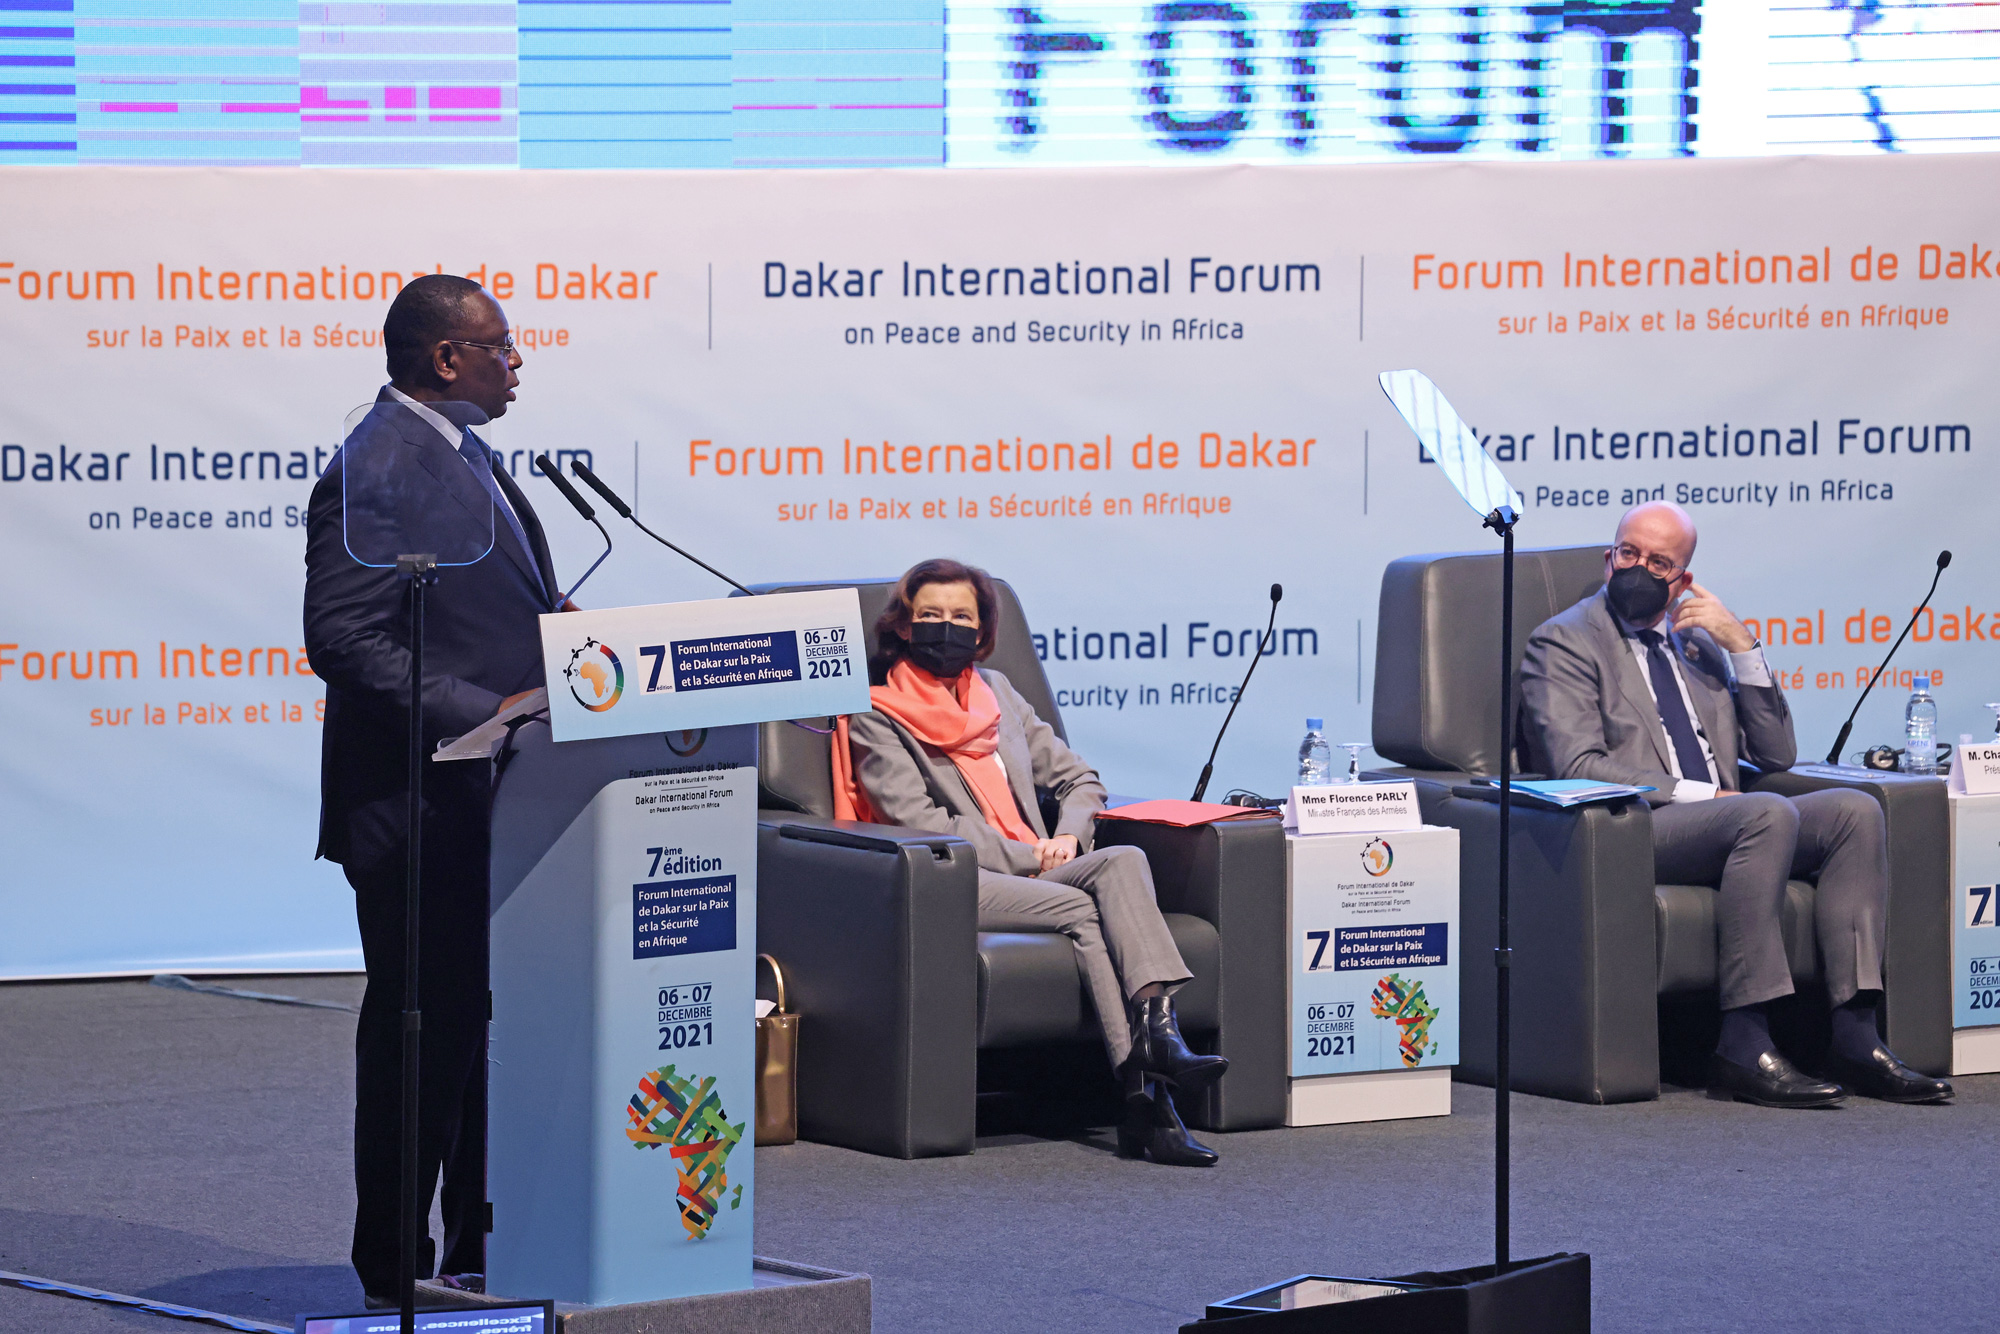 Avisa_Partners_Forum_de_Dakar_2021